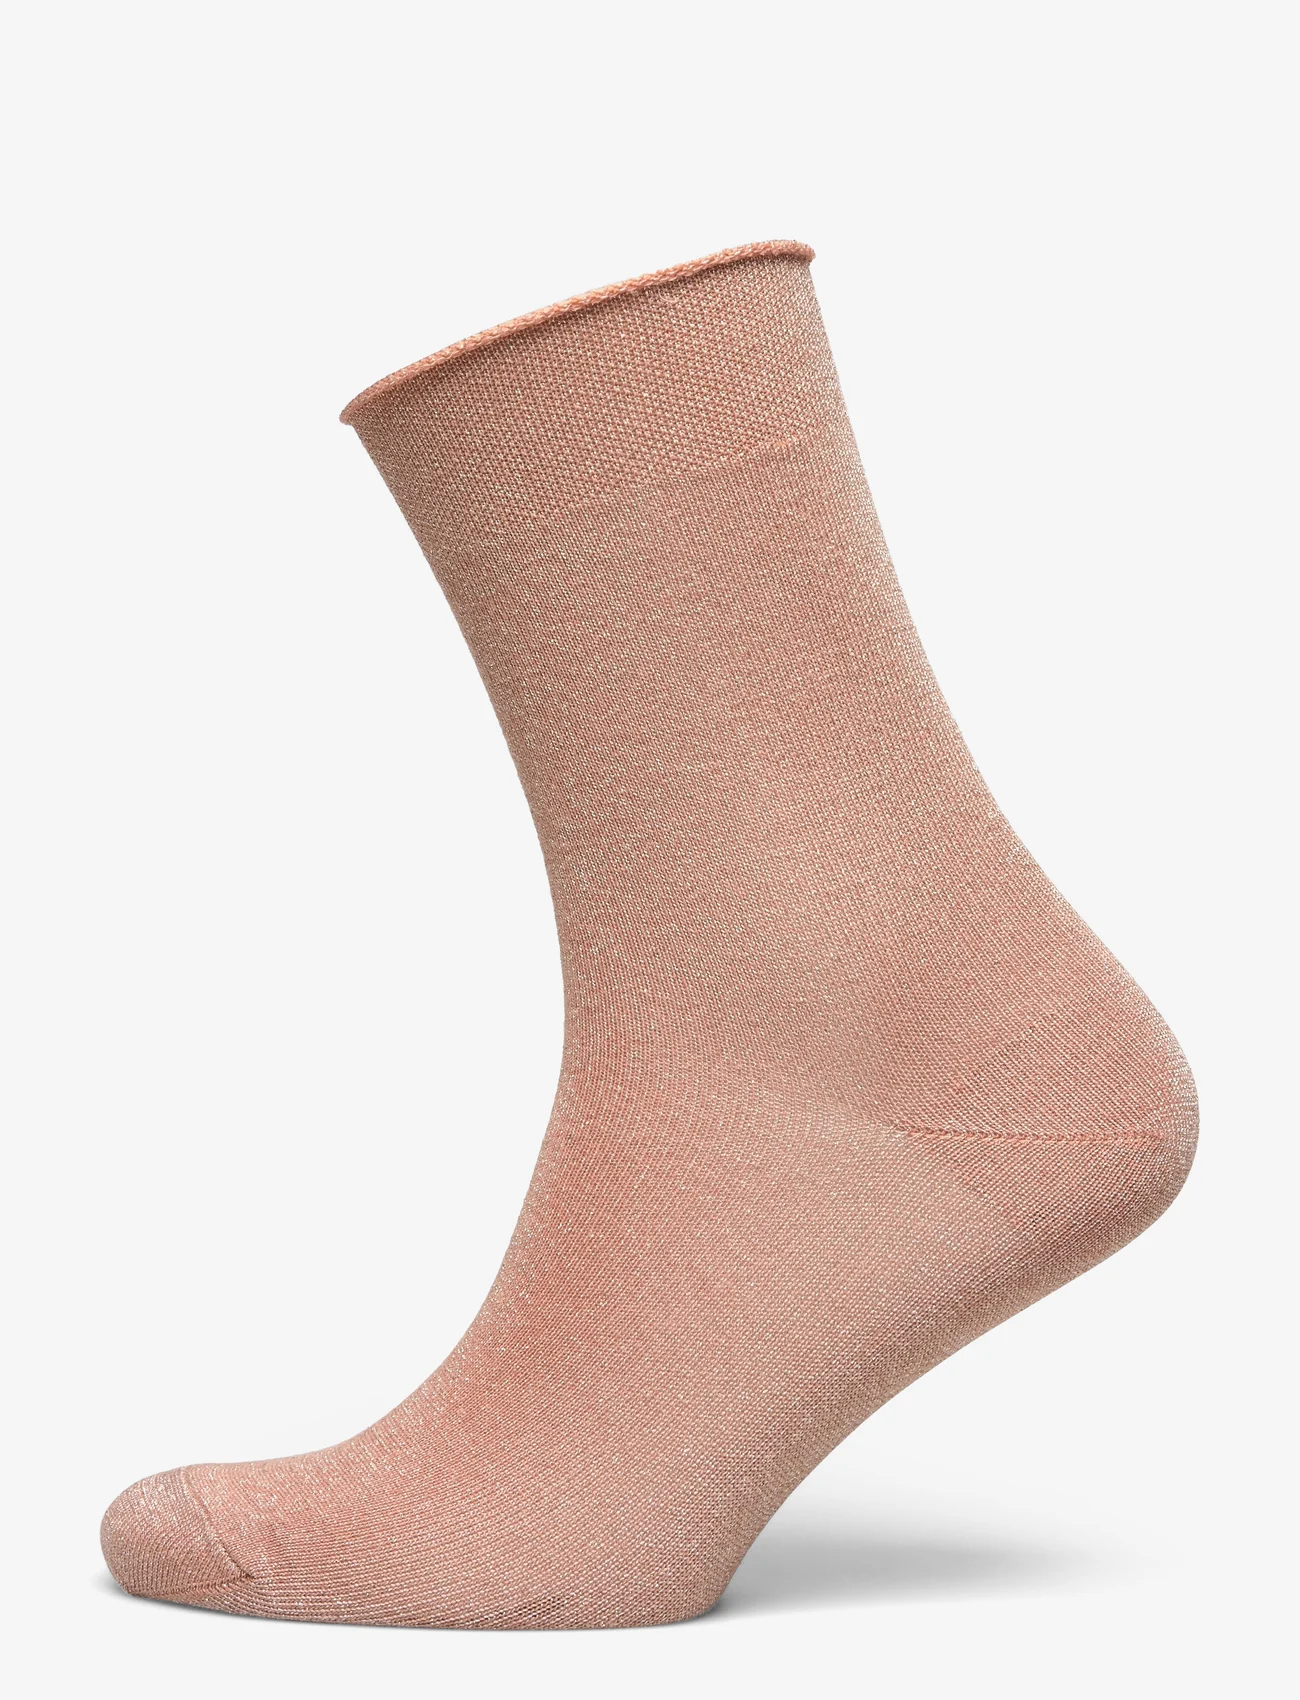 mp Denmark - Lucinda socks - madalaimad hinnad - maple sugar - 0